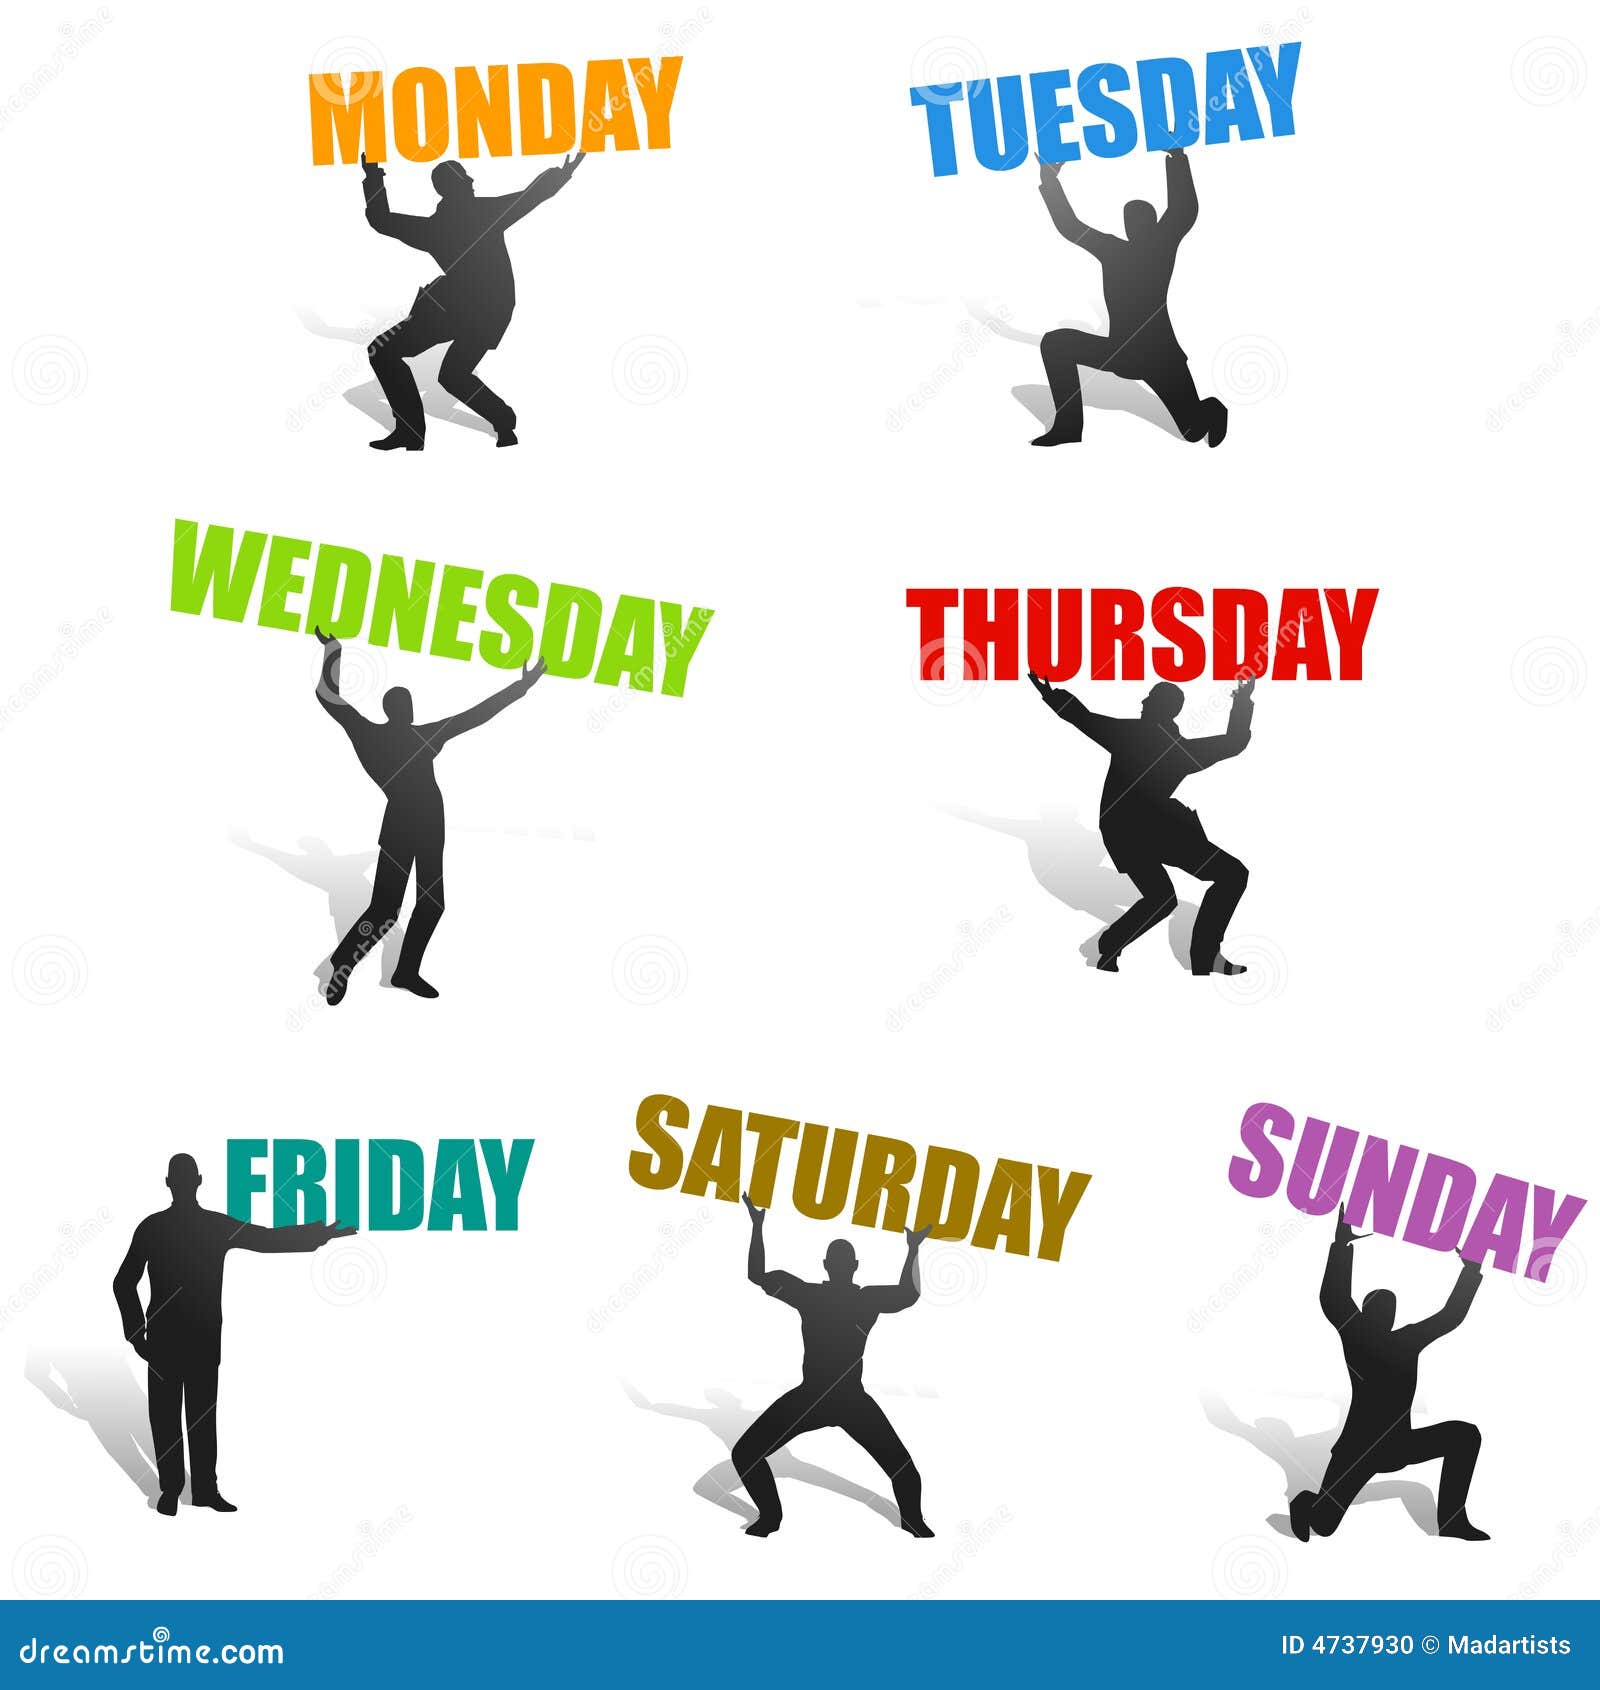 Включи понедельник вторник четверг пятница. Дни недели. Дни недели на английском. Дни недели картинки. Ассоциации с днями недели.